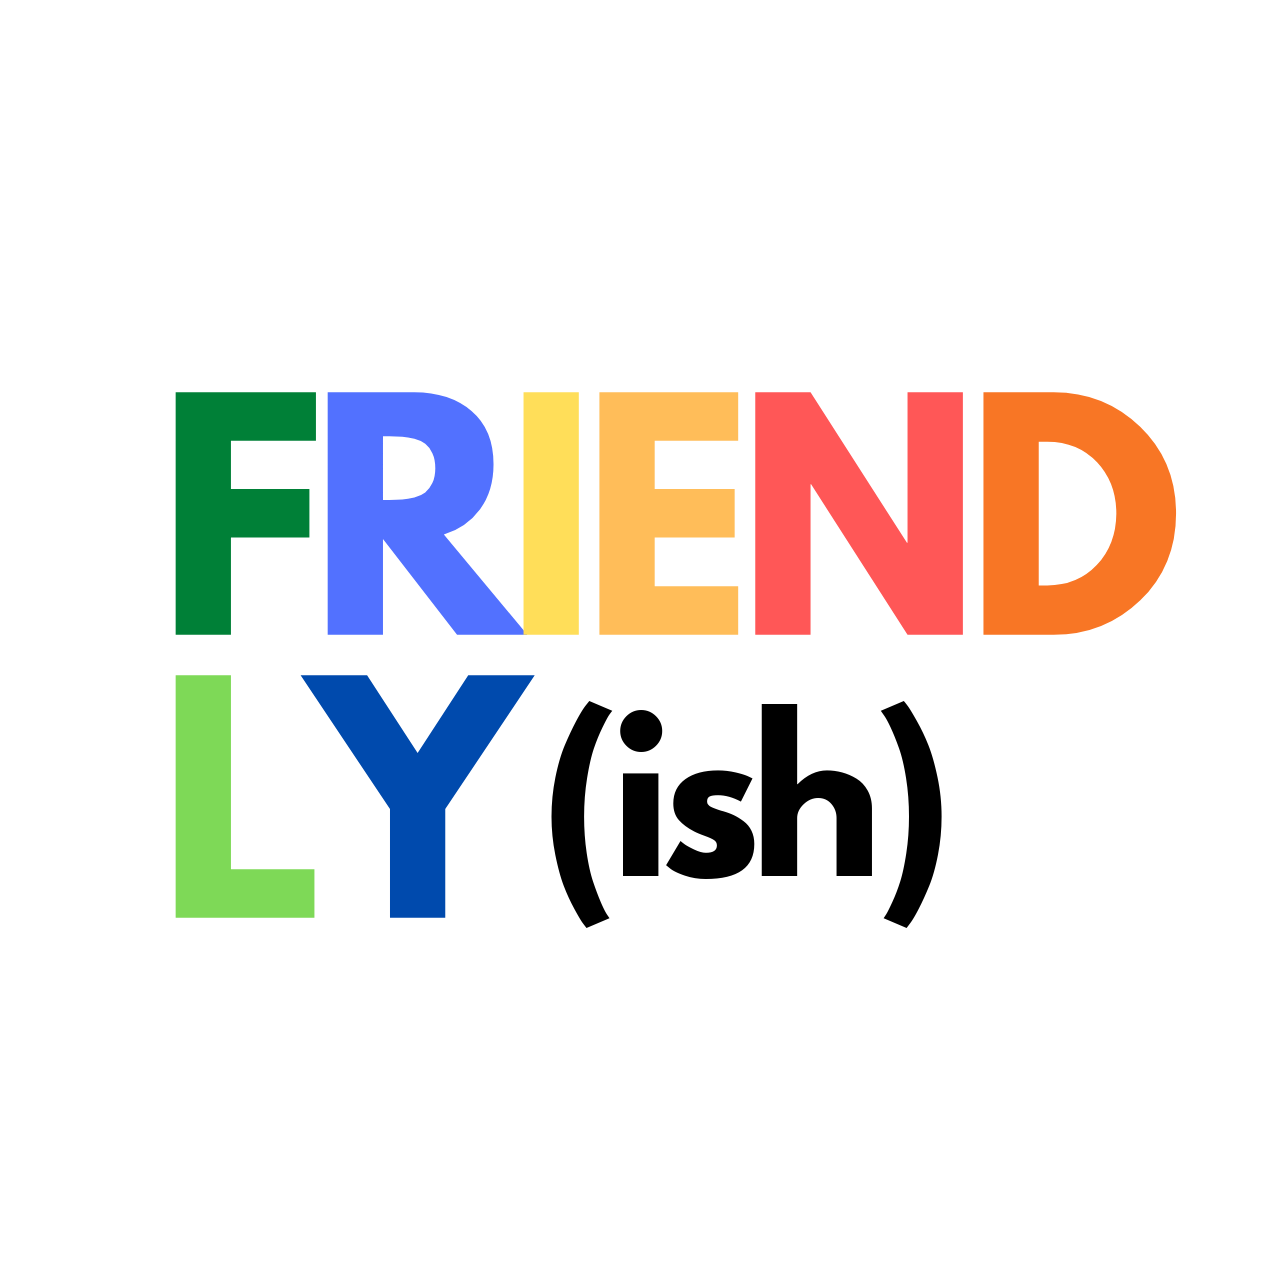 Friendly(ish)